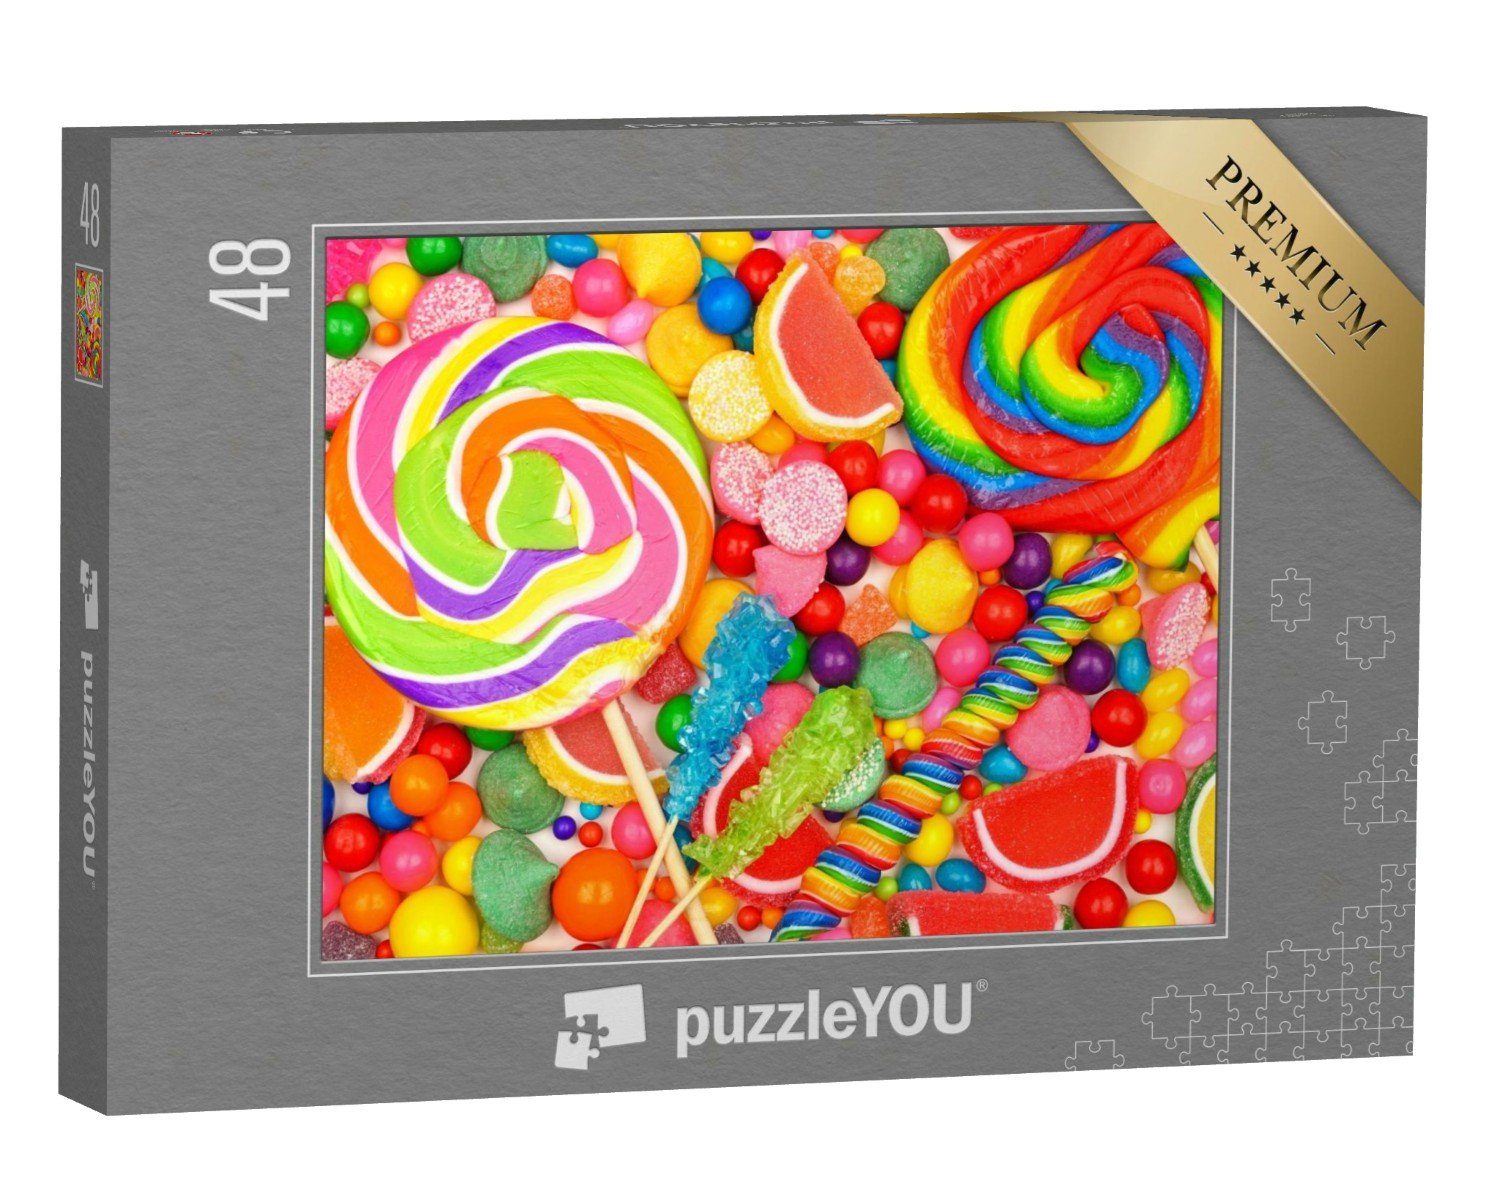 puzzleYOU Puzzle Süßigkeitenmix aus u. a. Lutschern und Kaugummi, 48 Puzzleteile, puzzleYOU-Kollektionen Süßigkeiten